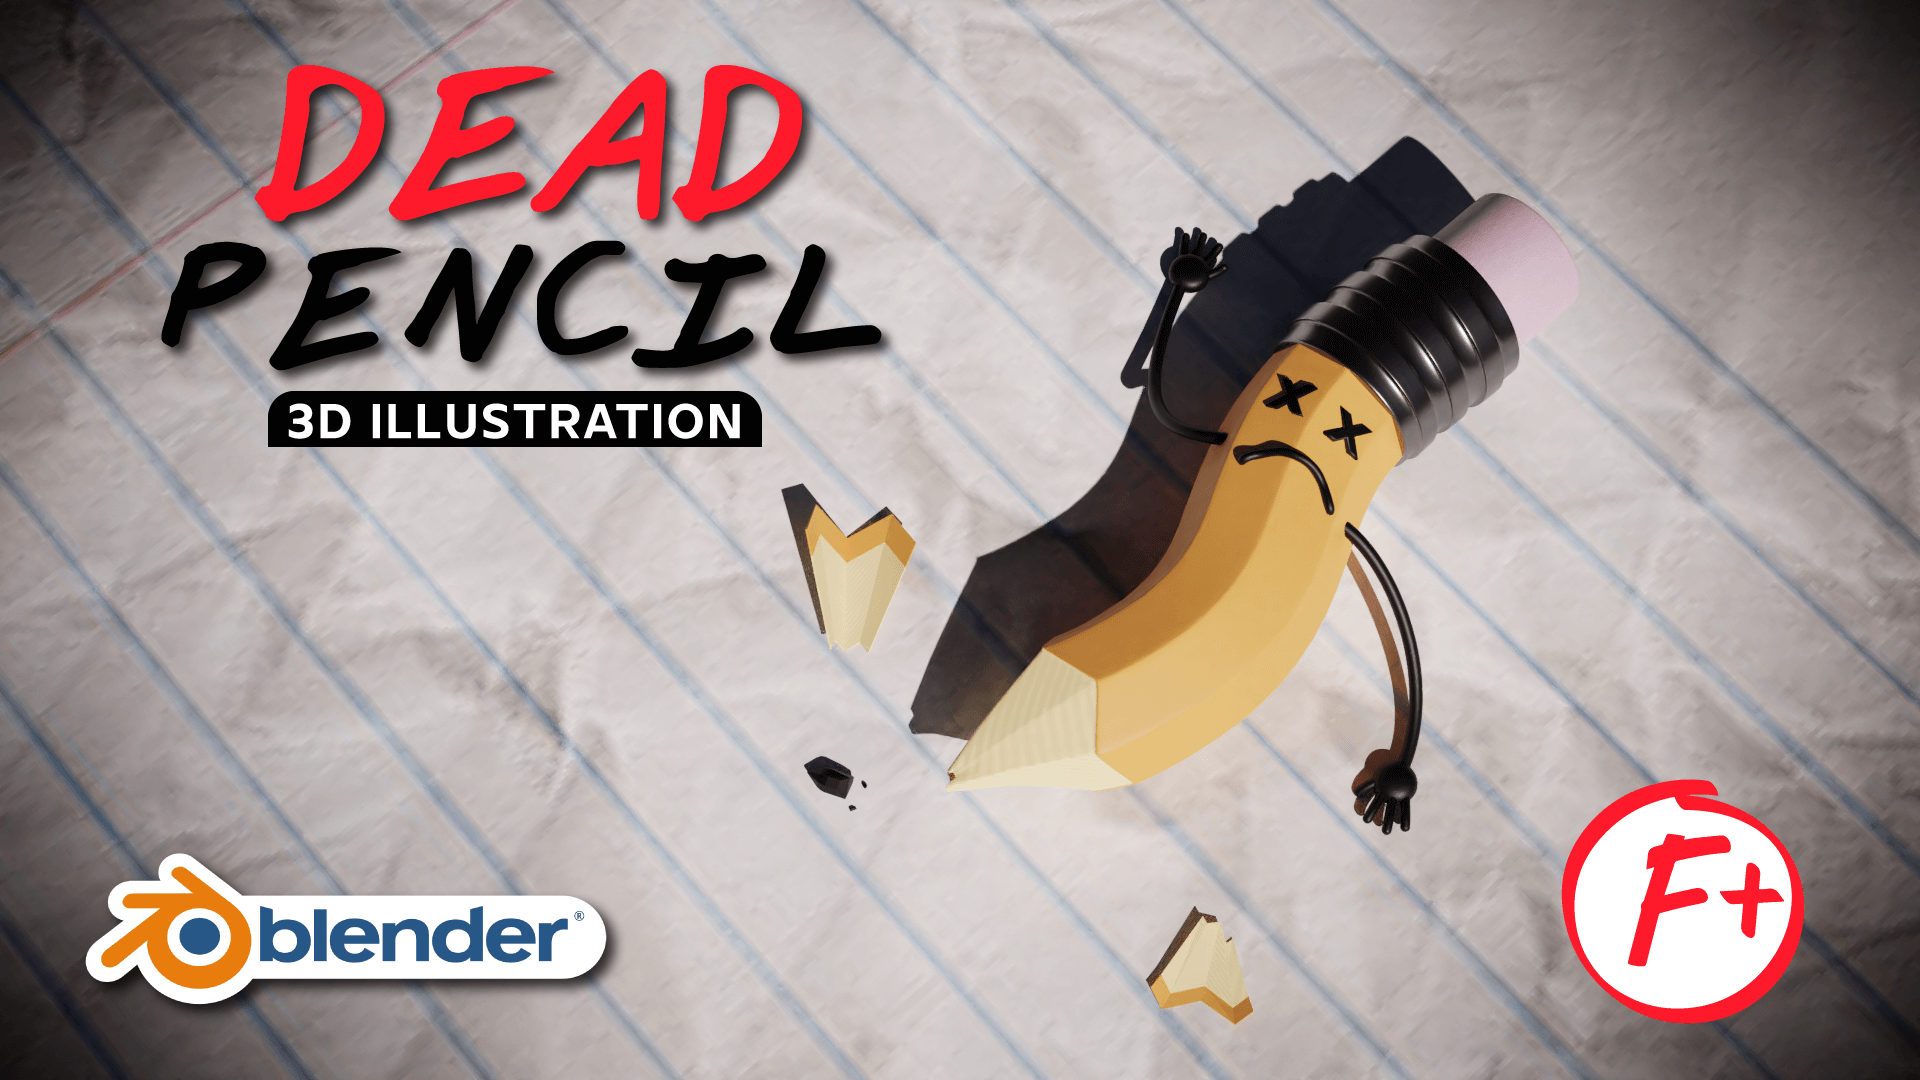 Dead Pencil Illustration 3D Blender Course Academy